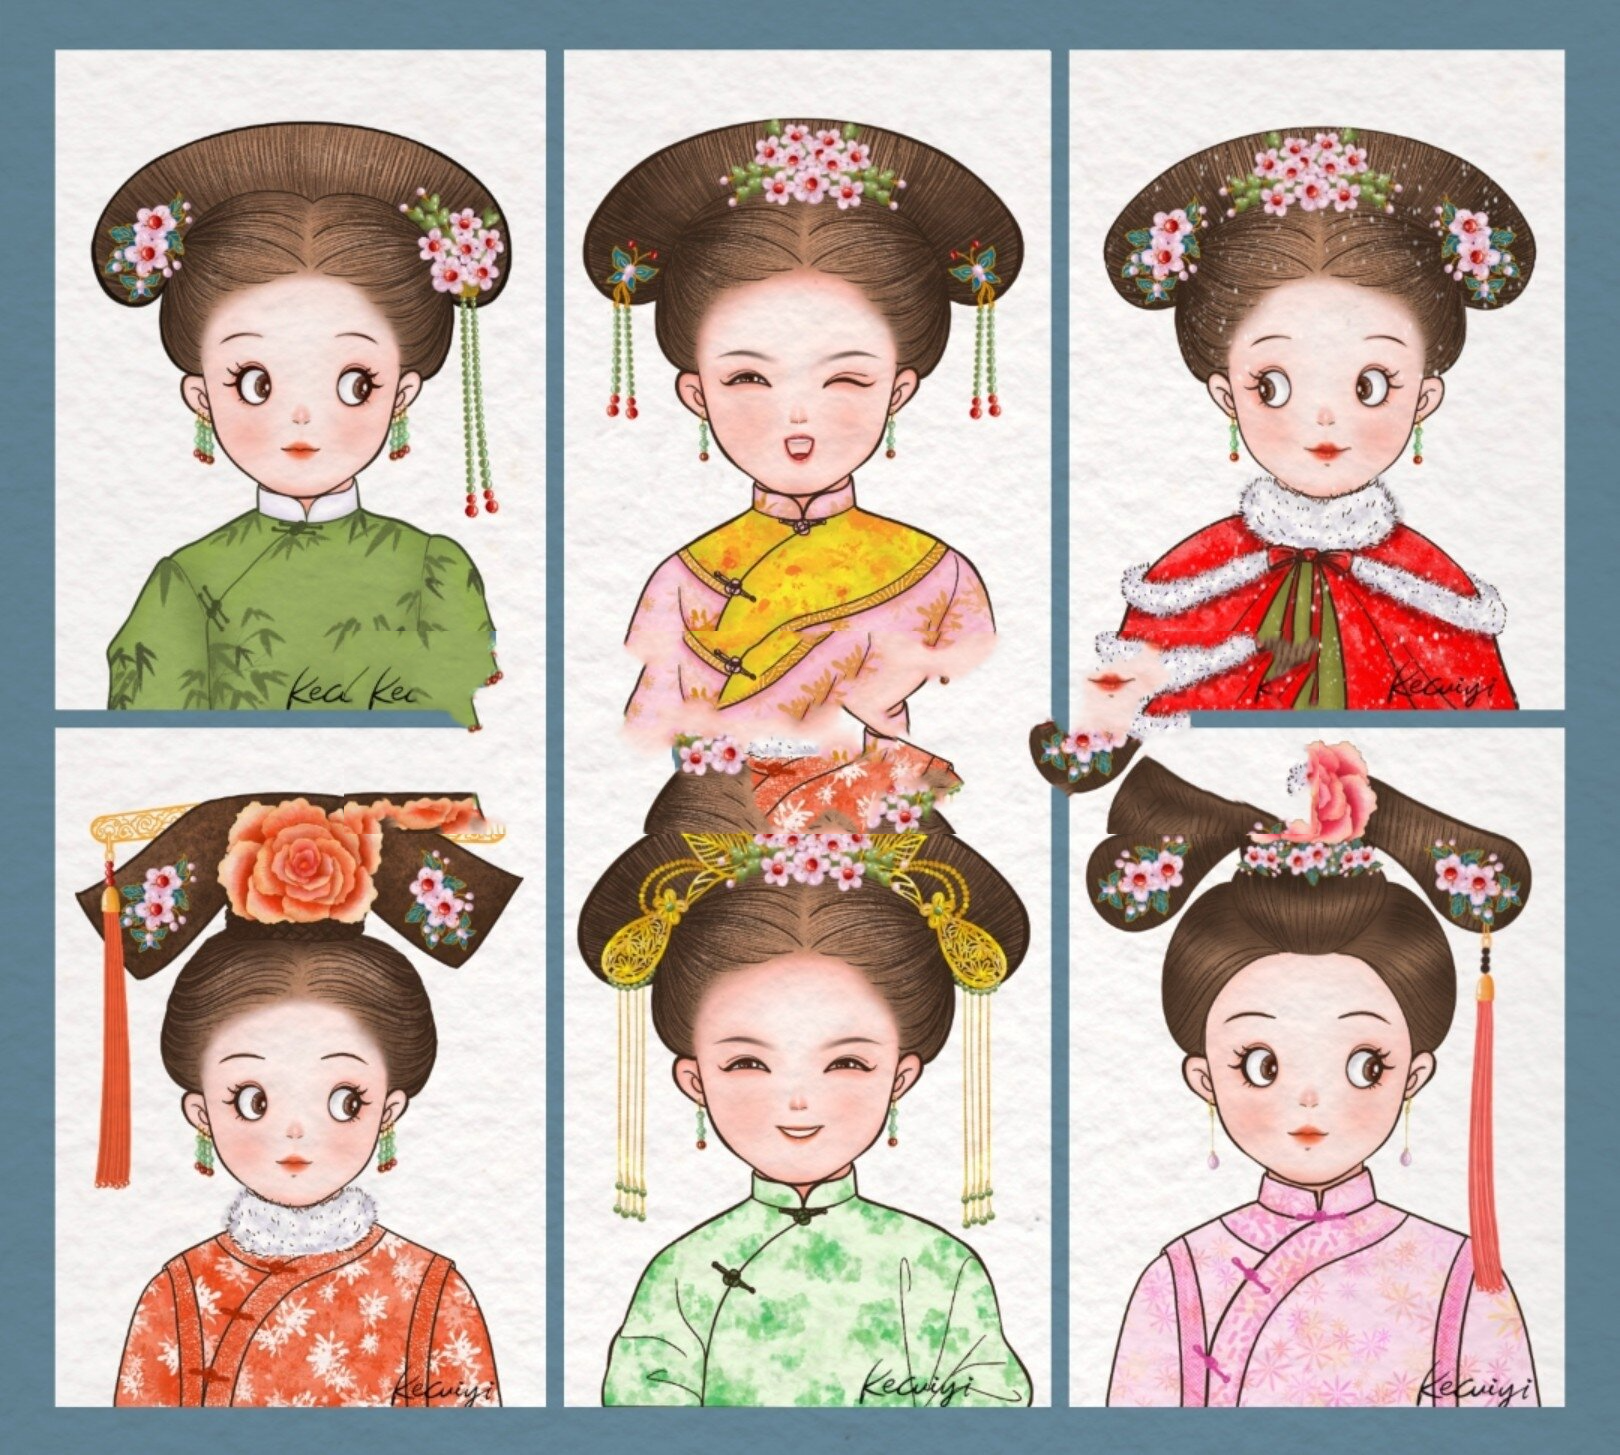 中国风系列小头像,一组可爱的清朝小格格们